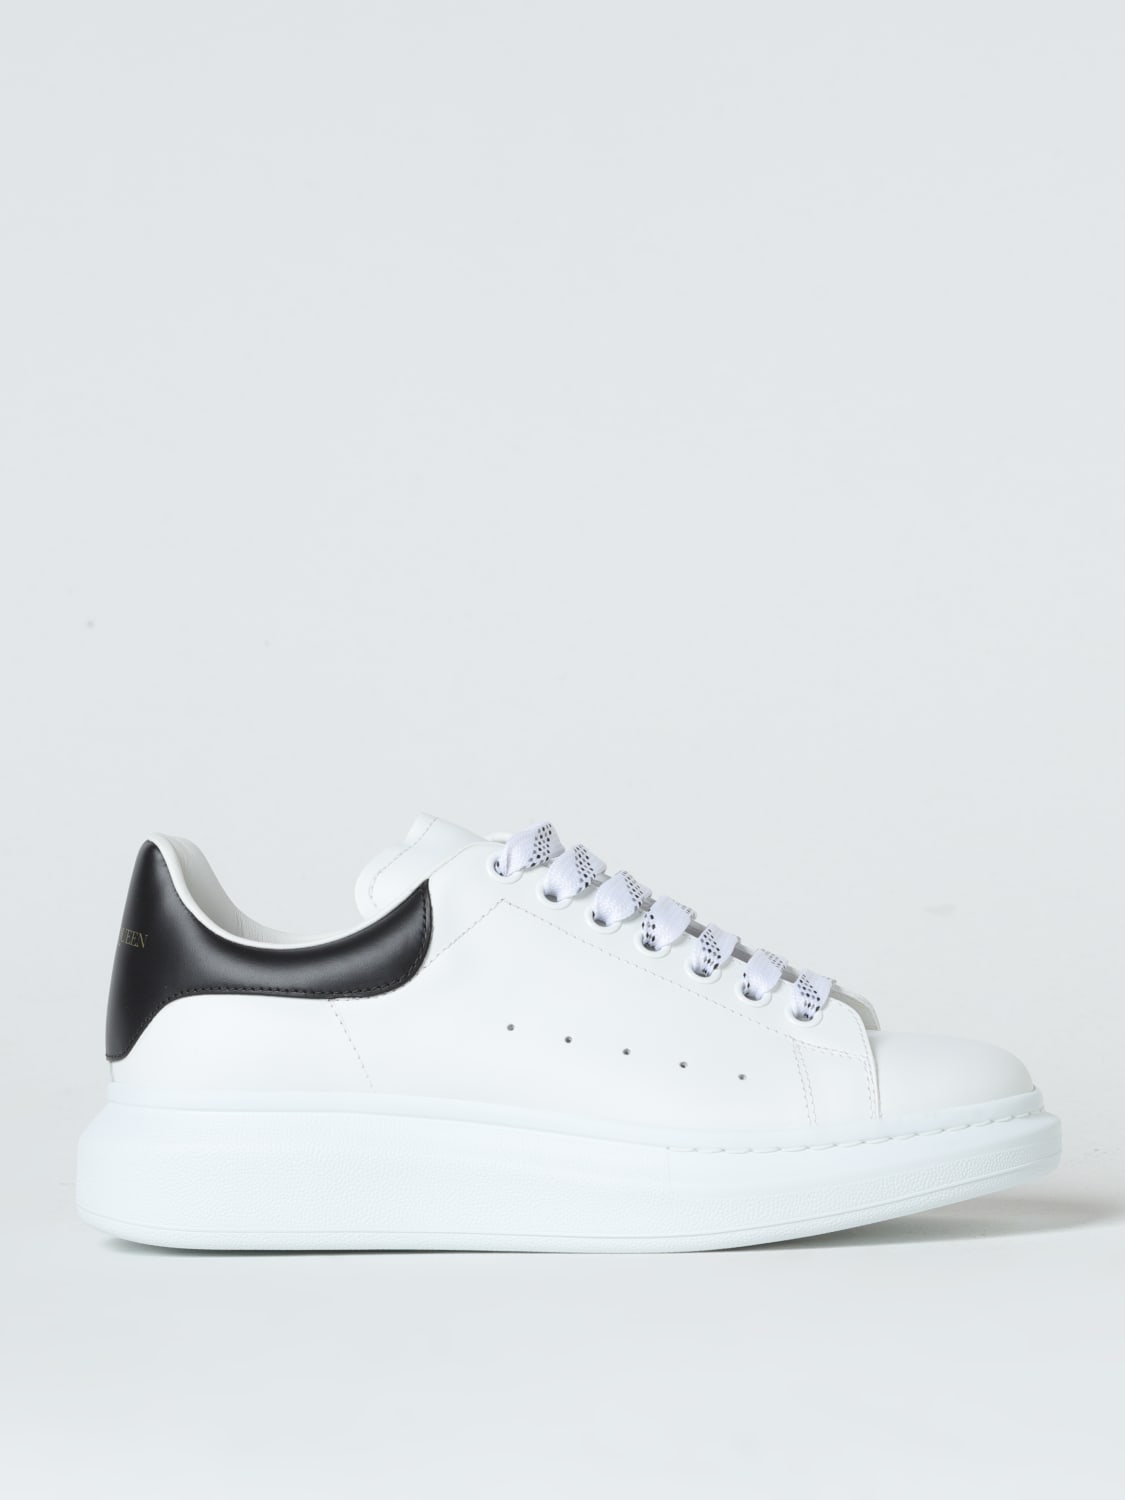 ALEXANDER MCQUEEN: Larry leather sneaker - White | Alexander Mcqueen ...